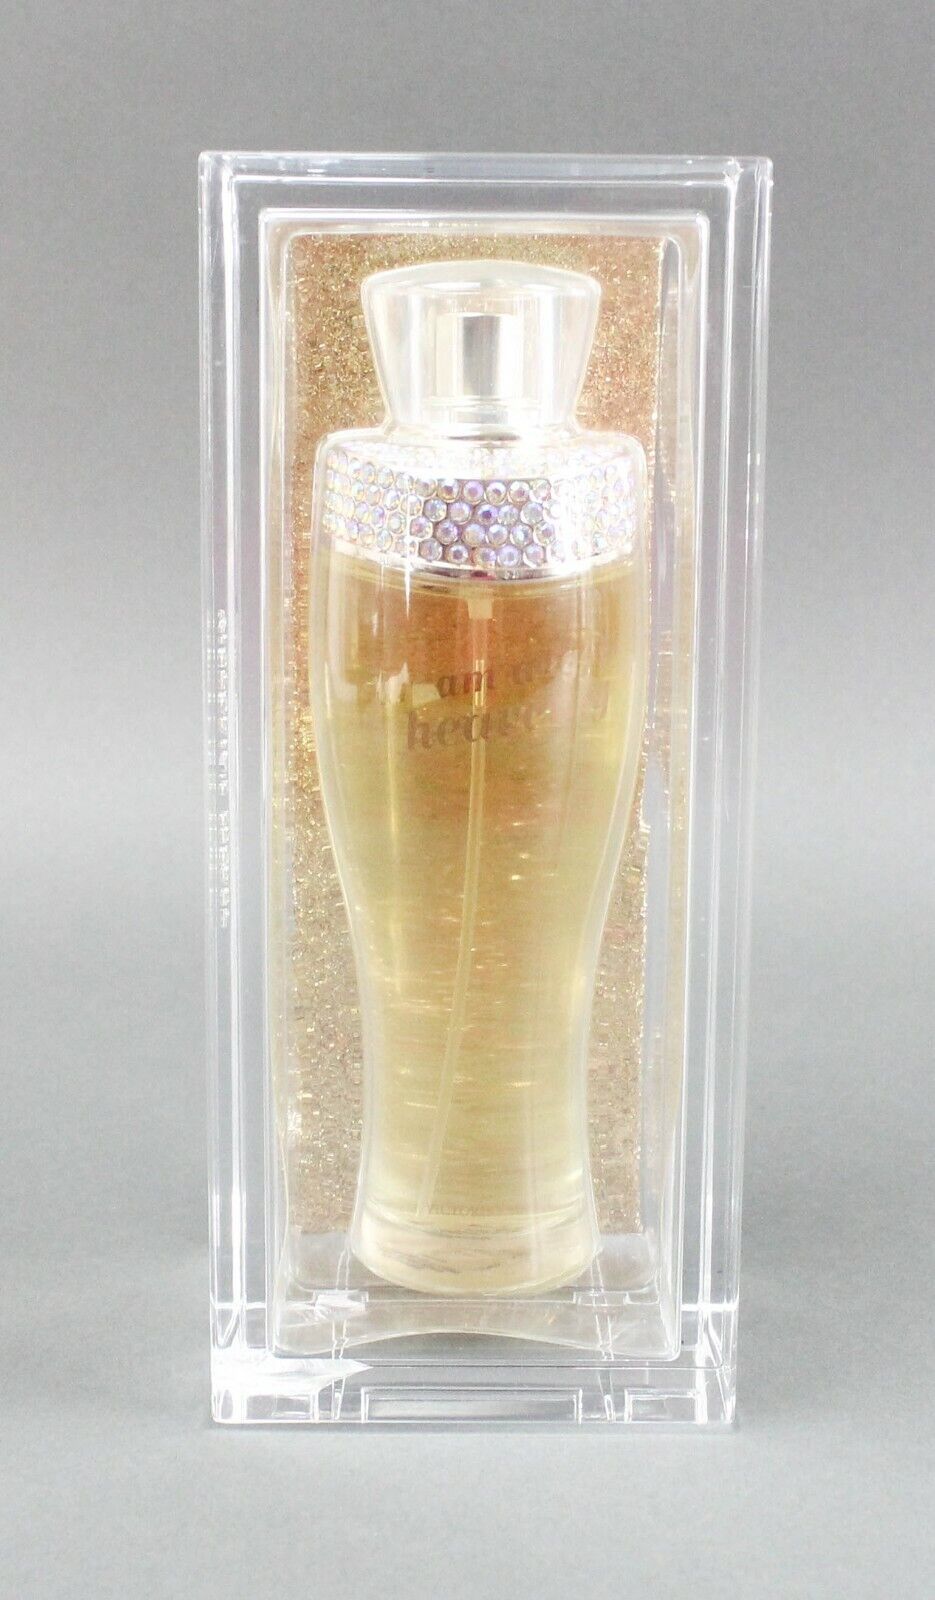 Victoria's Secret Dream Angels Heavenly Eau De Parfum 4.2 oz /125 ml 2006 Sealed - $166.99